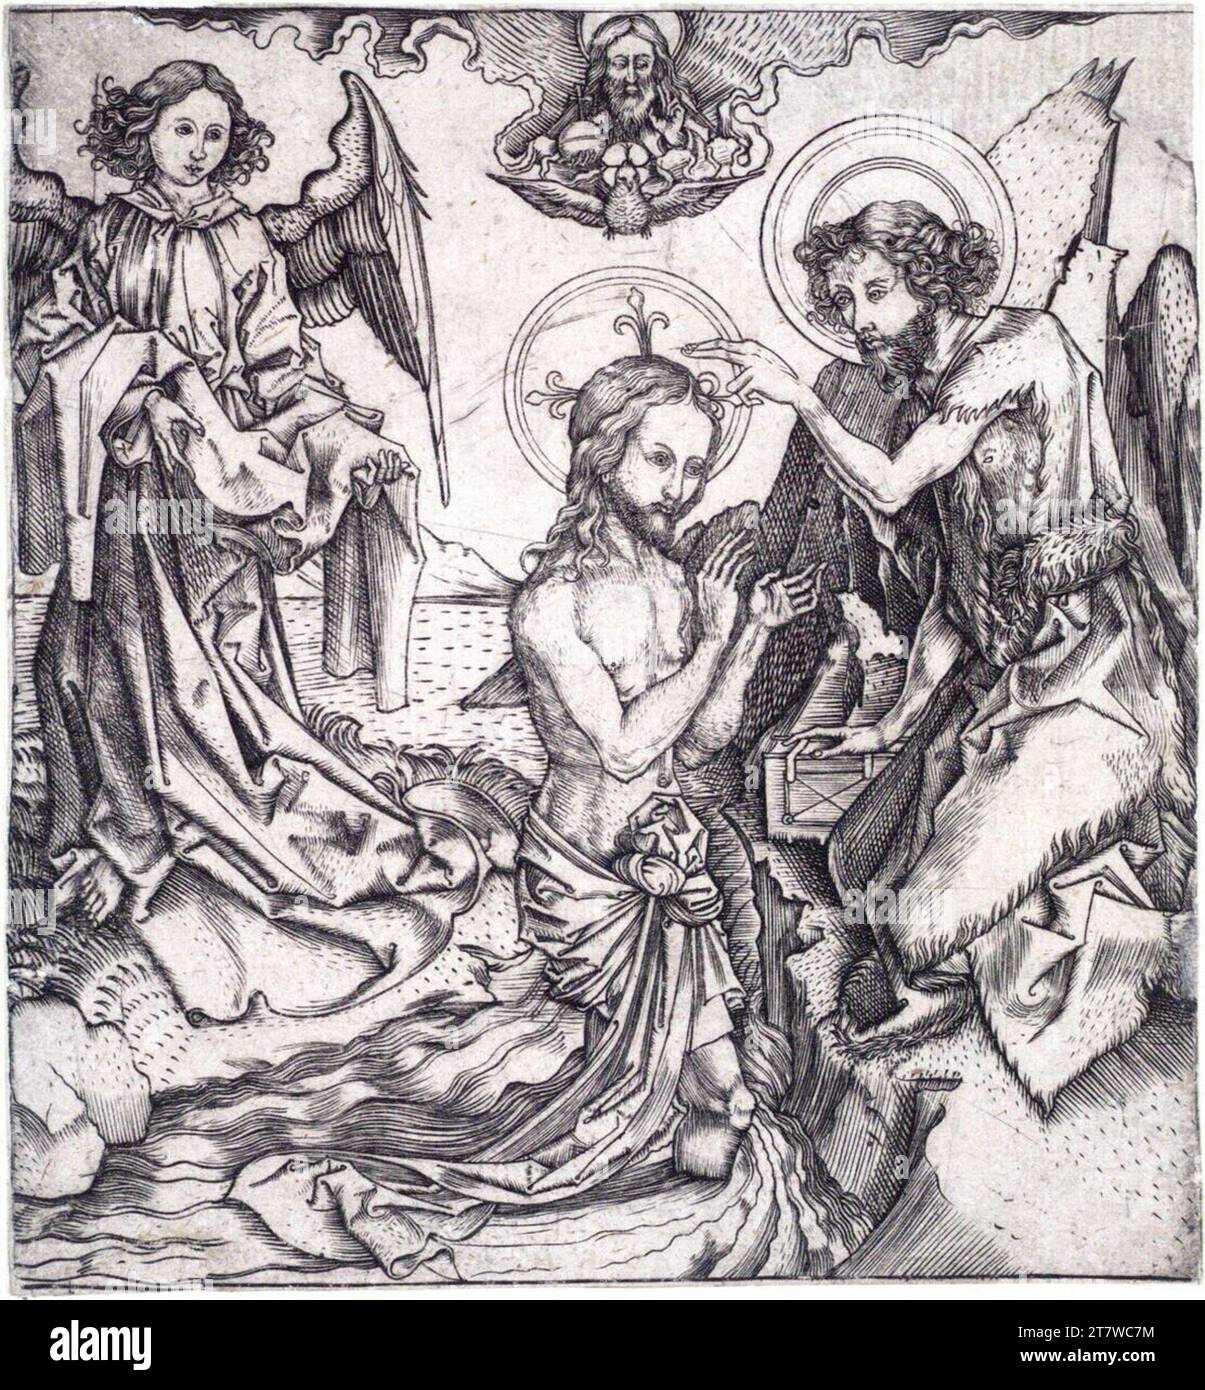 Meister, cioè il battesimo di Cristo. Stampa con incisione in rame intorno al 1500 Foto Stock